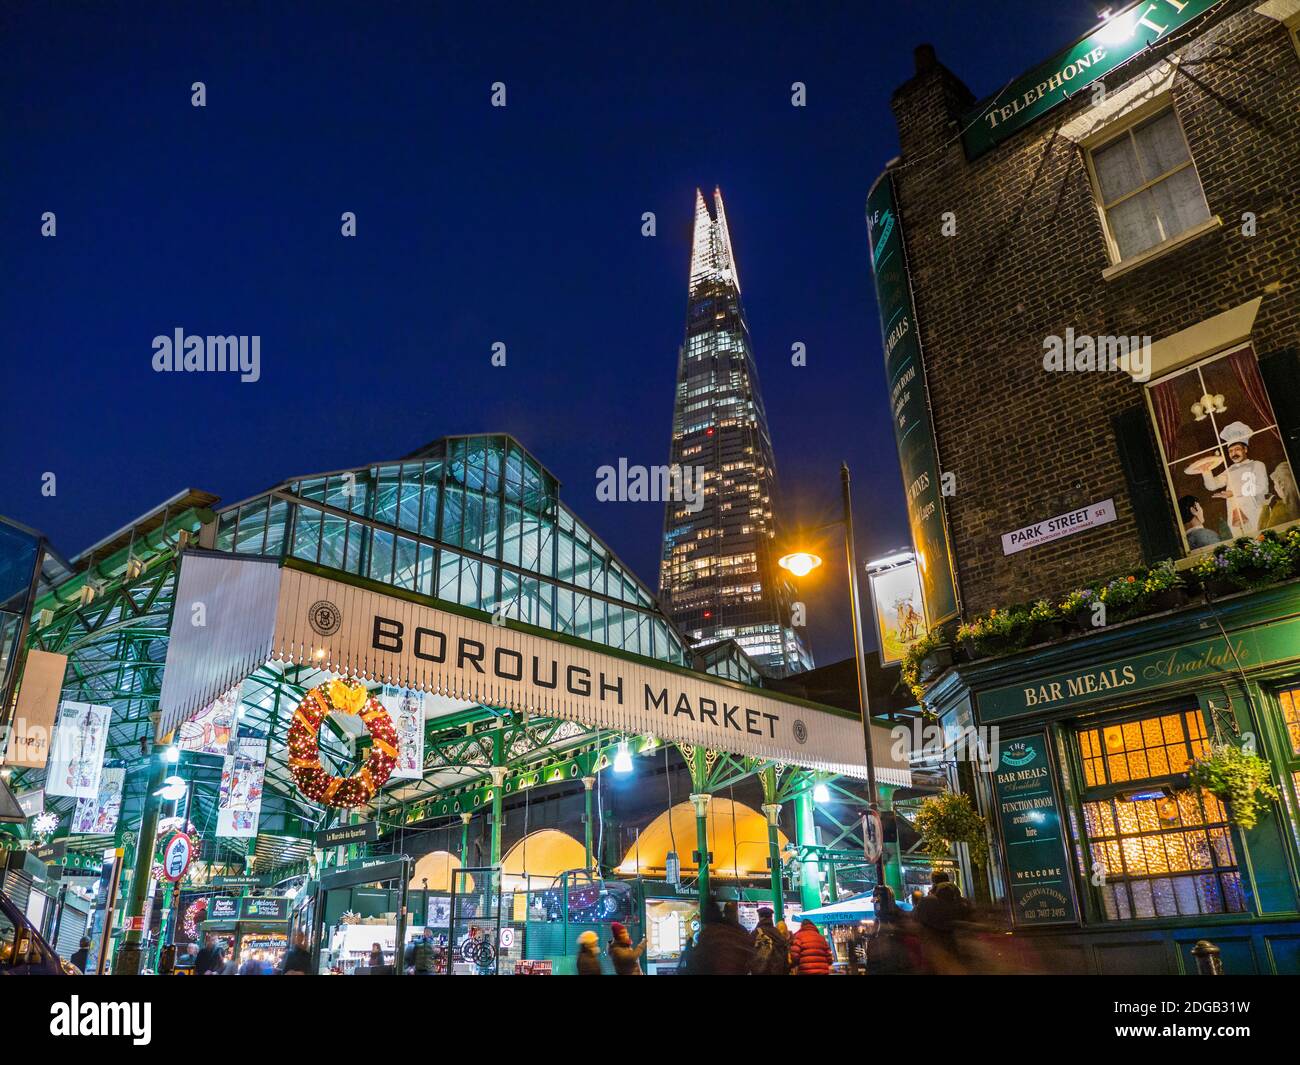 Borough Market, facciata esterna di Natale, ingresso e shopping natalizio, notte di luci con le corone di Natale London Shard Tower dietro Southwark London UK Foto Stock